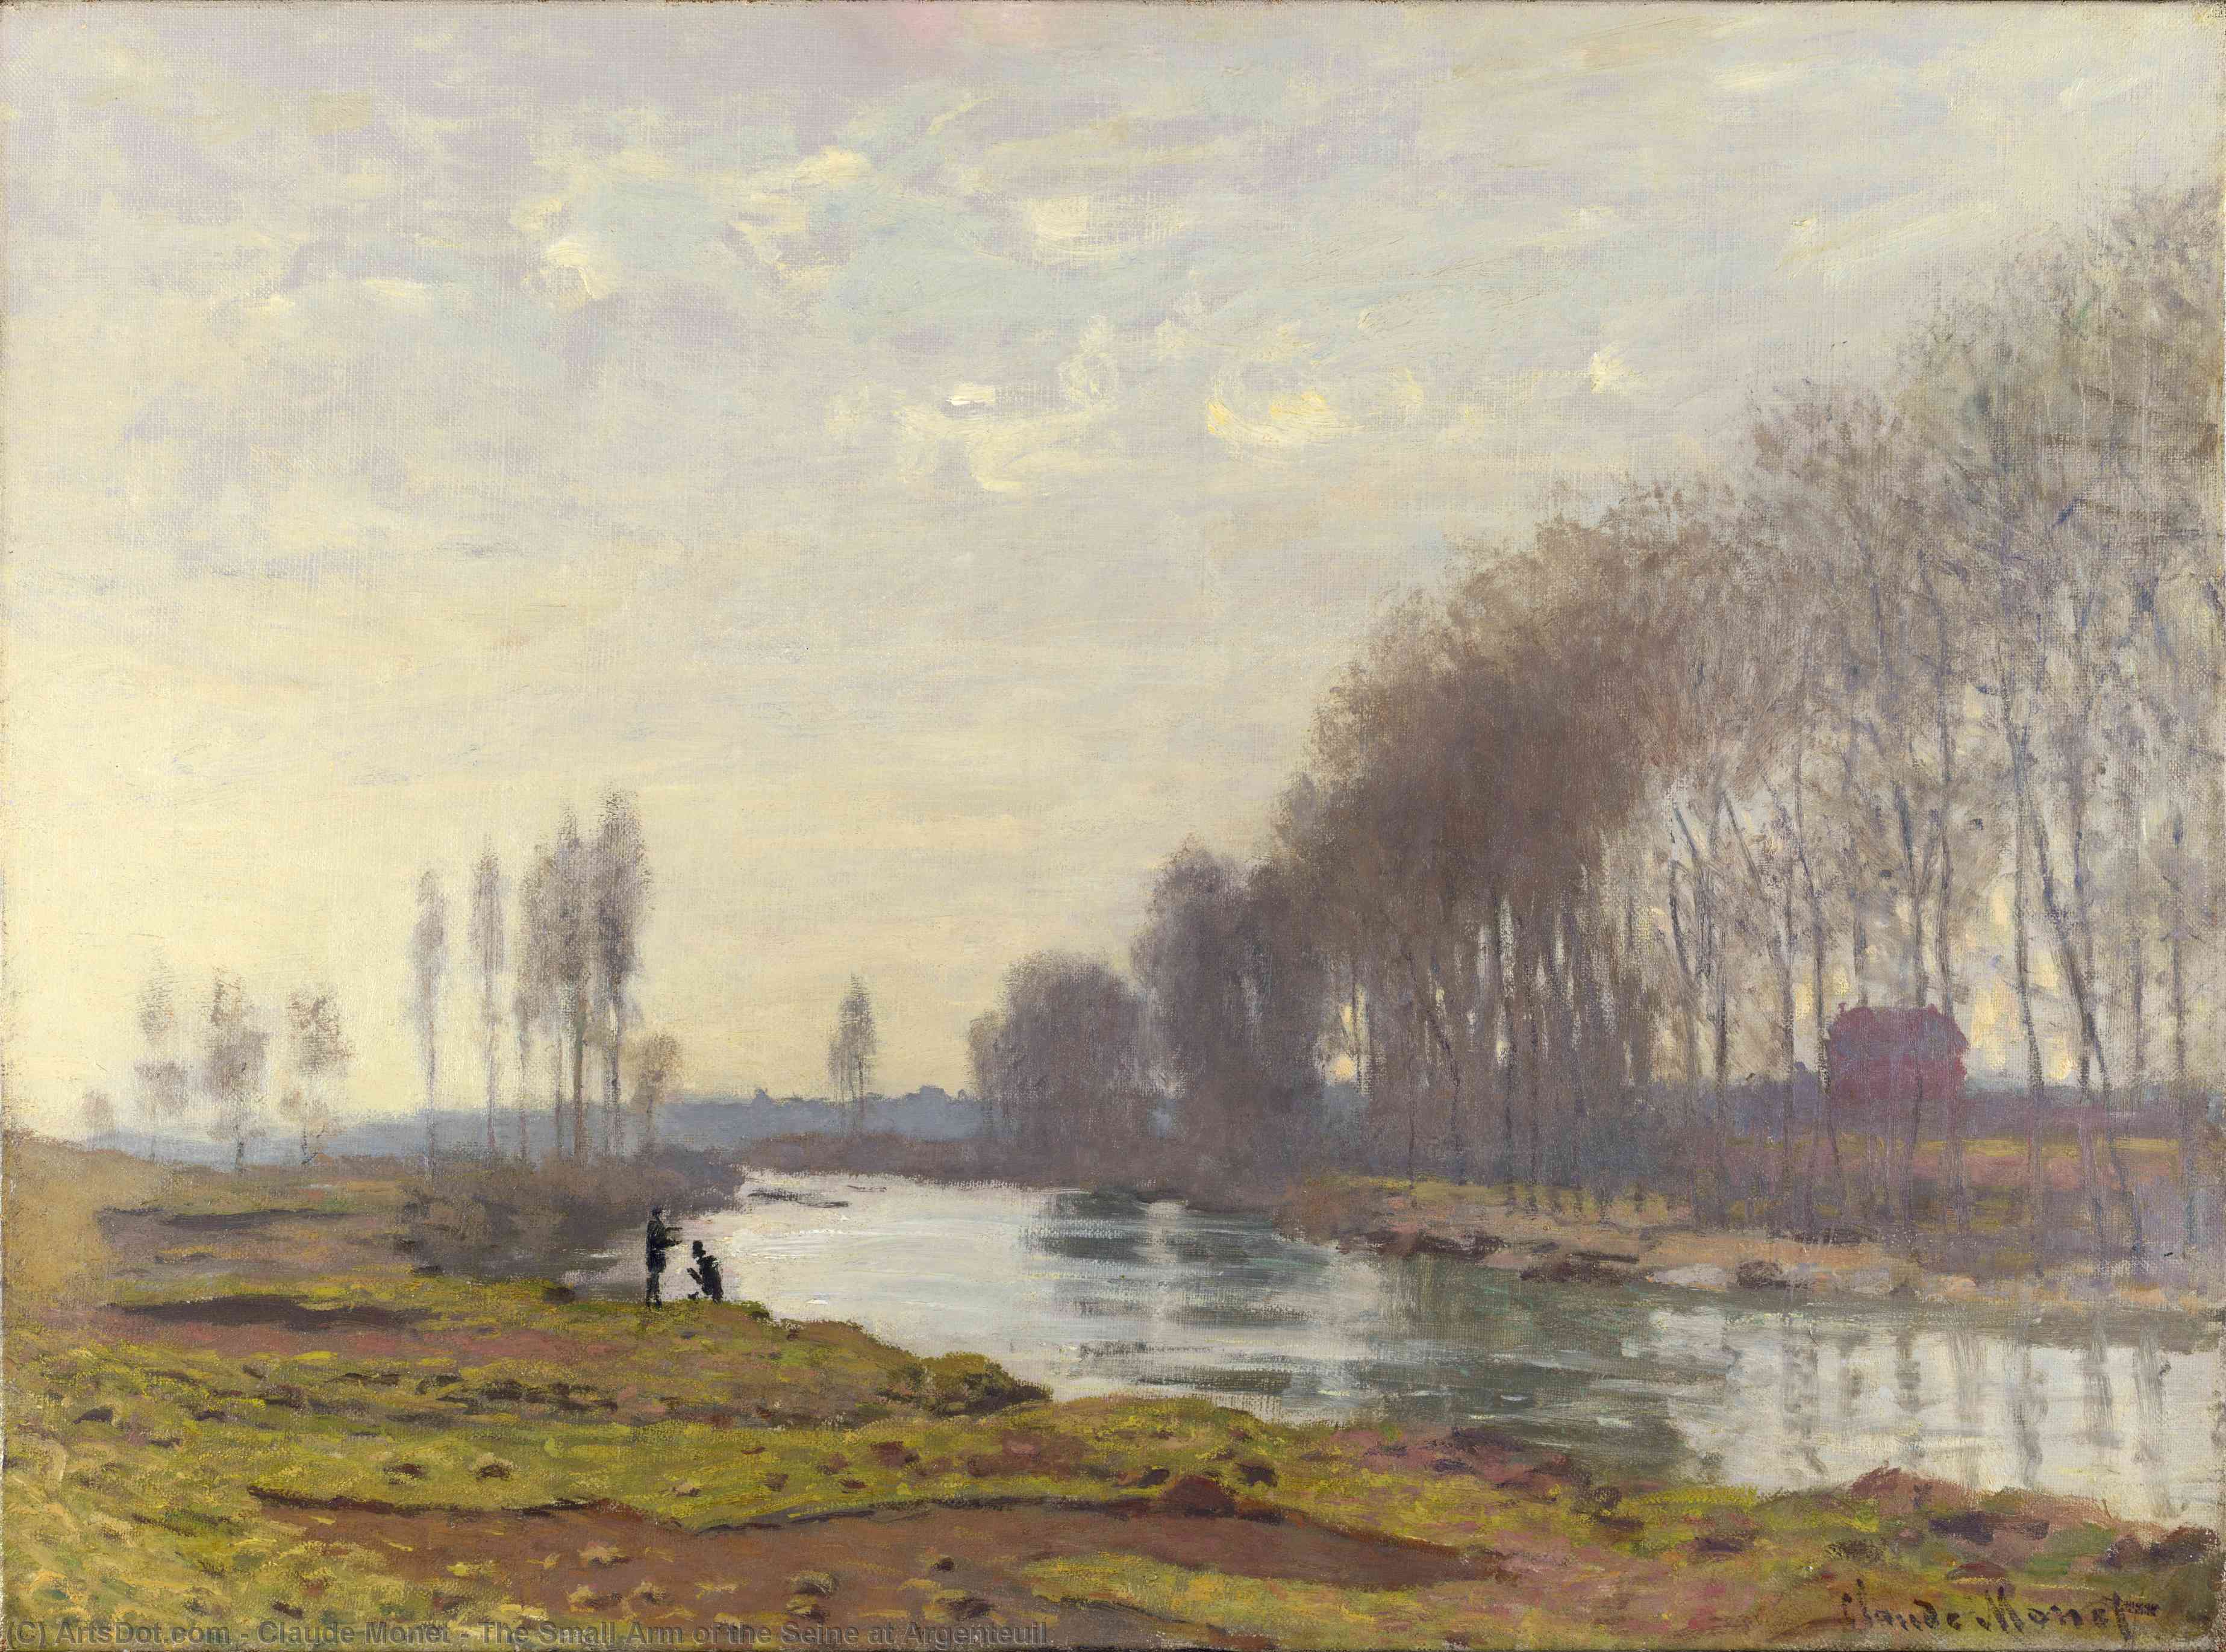 Wikioo.org - Die Enzyklopädie bildender Kunst - Malerei, Kunstwerk von Claude Monet - der kleine arm der seine bei argenteuil